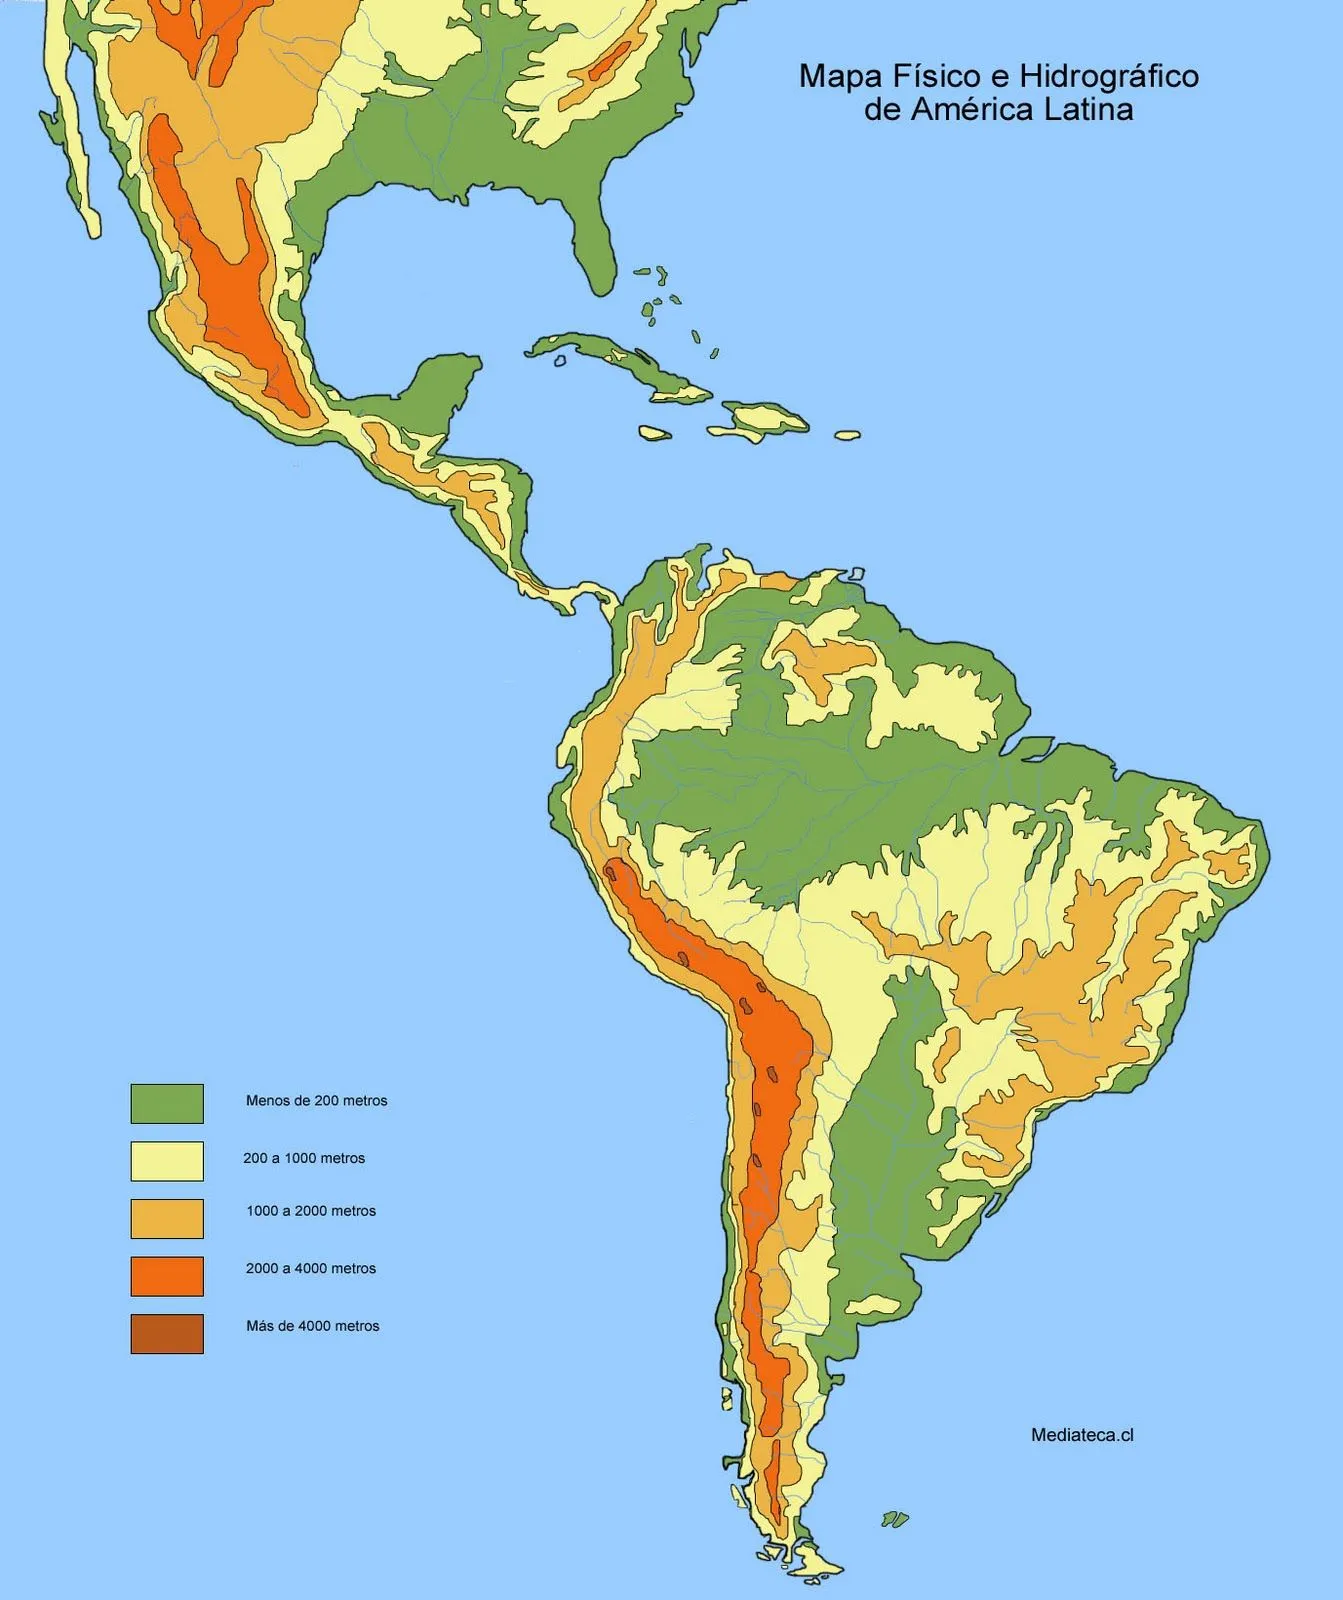 Historia Contemporanea: mapa fisico de America Latina